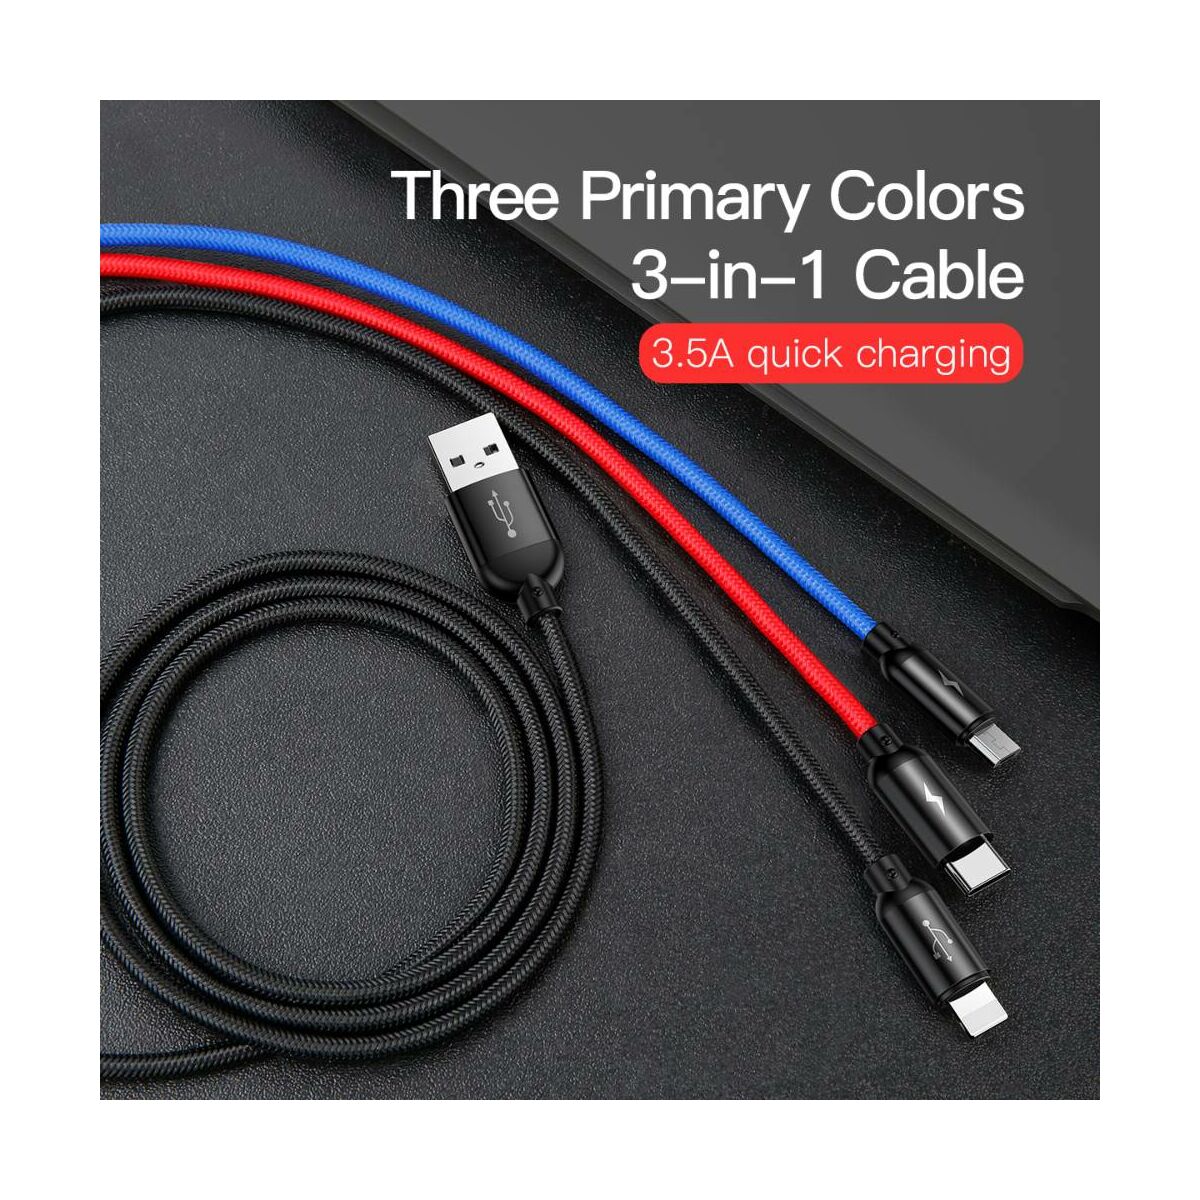 Kép 5/14 - Baseus Univerzális kábel, Three Primary Colors Light/Type-C/Micro fonott Nylon bevonat 3.5A 1.2m, fekete (CAMLT-BSY01)